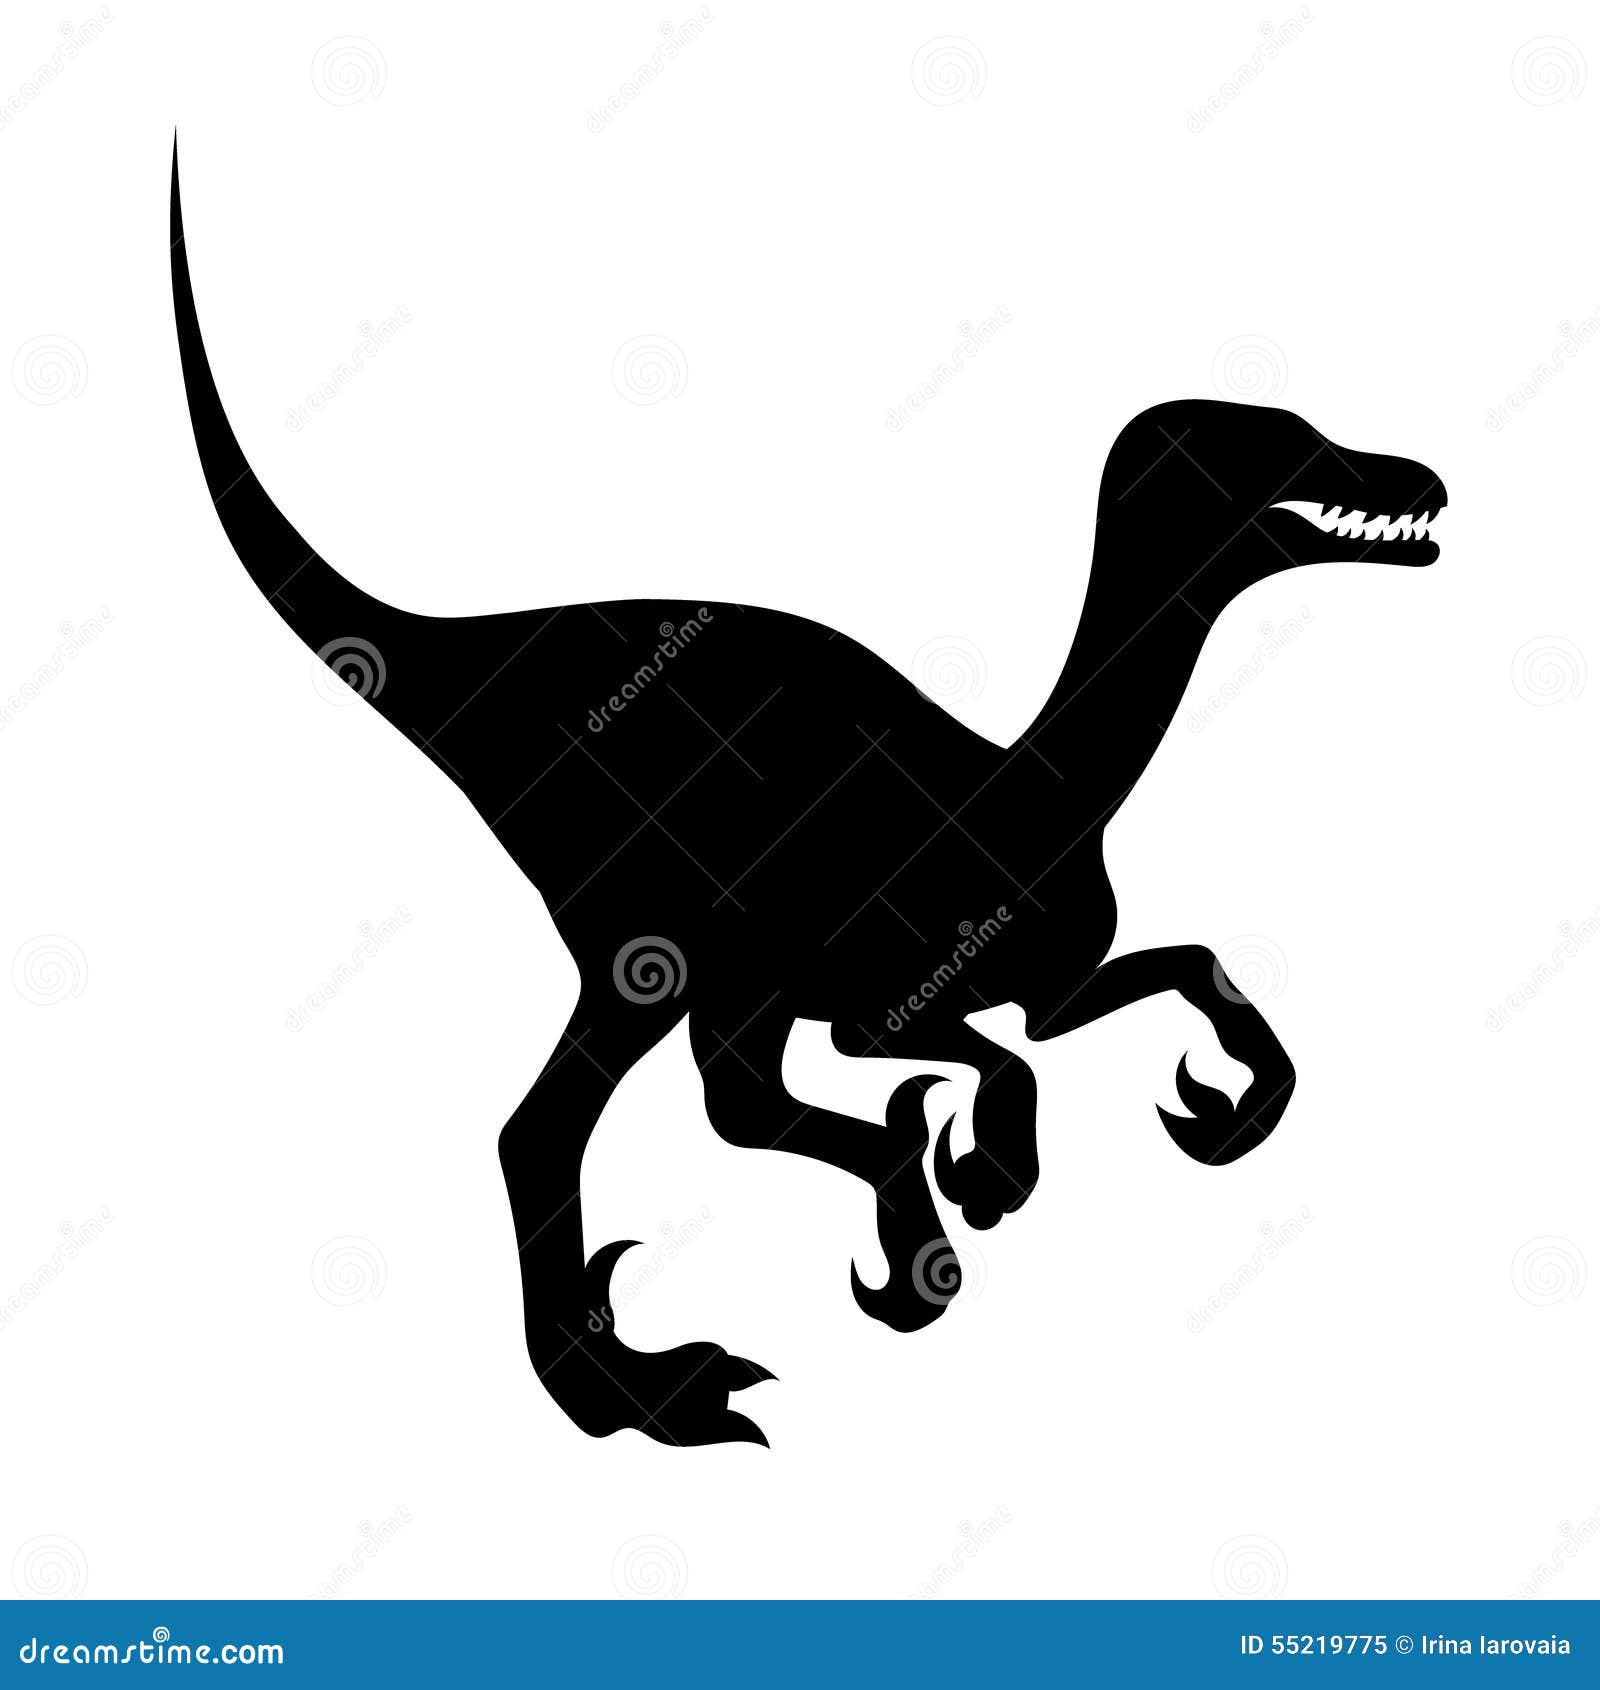 Silueta de un velociraptor ilustración del vector. Ilustración de dinosaurio  - 55219775